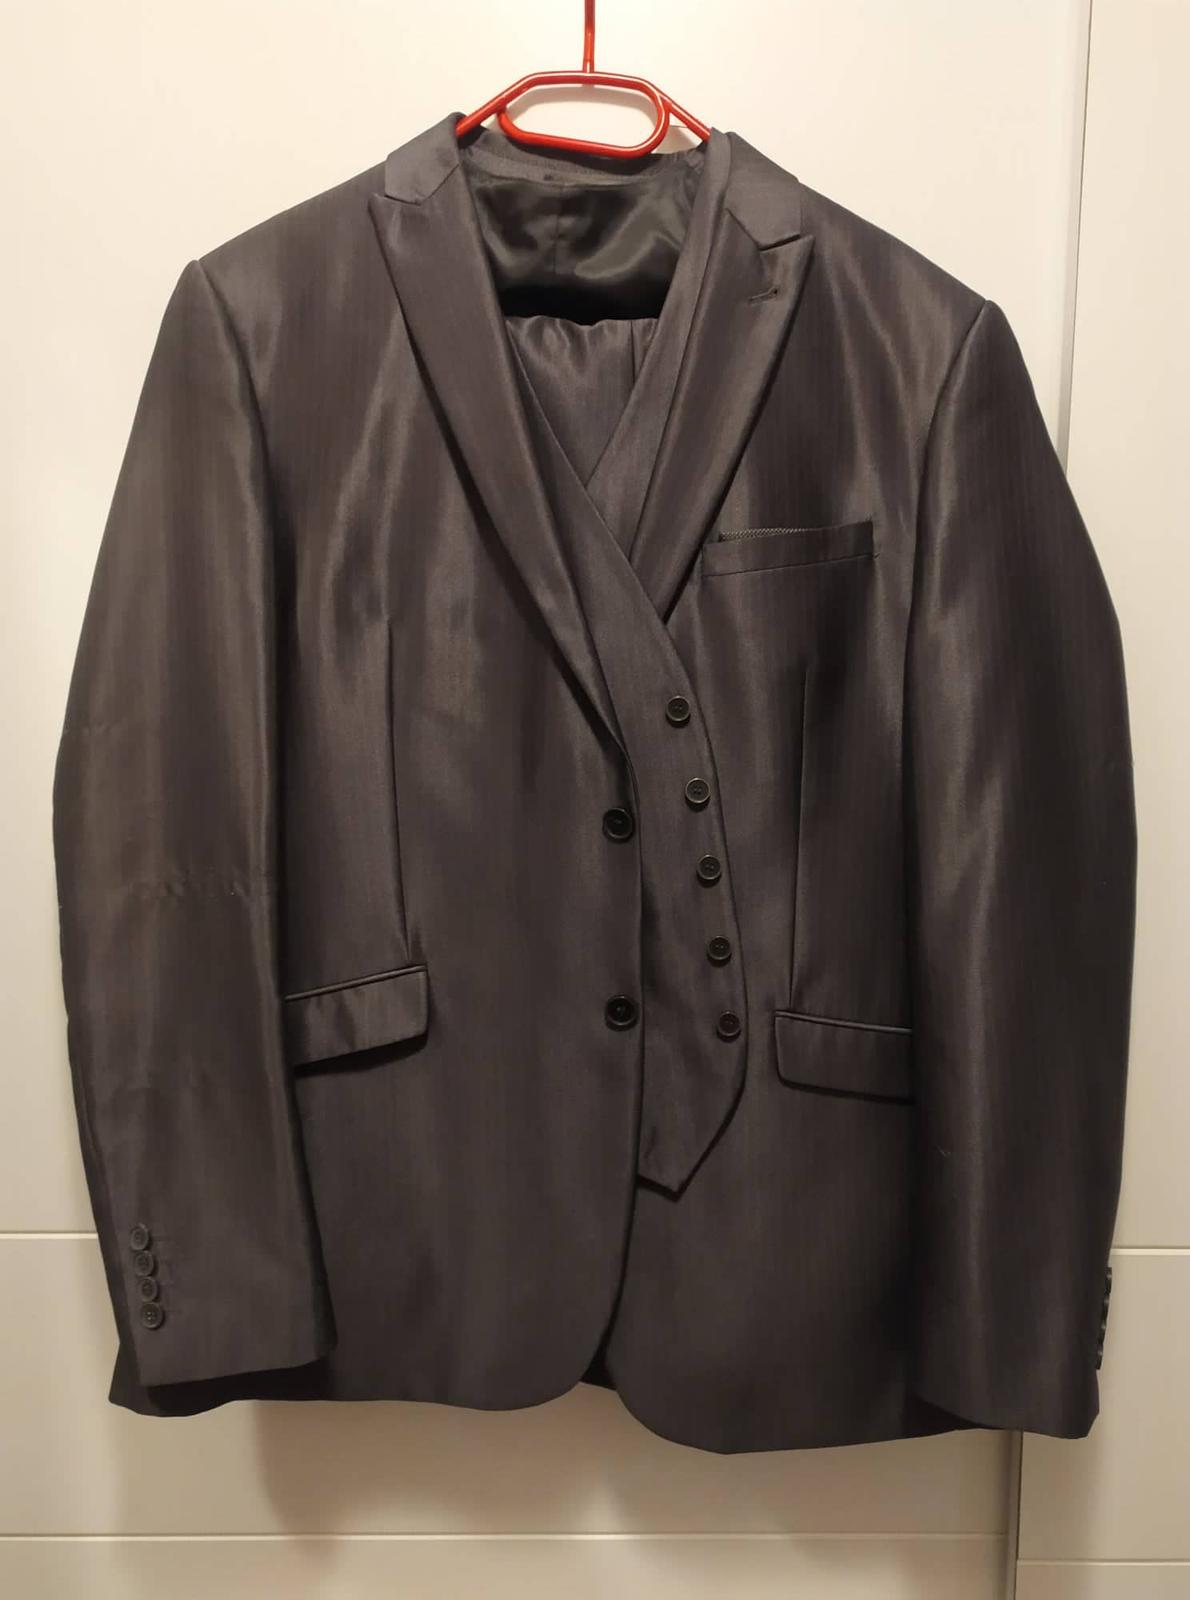 Pánský oblek - šedivý lesklý - Obrázek č. 1